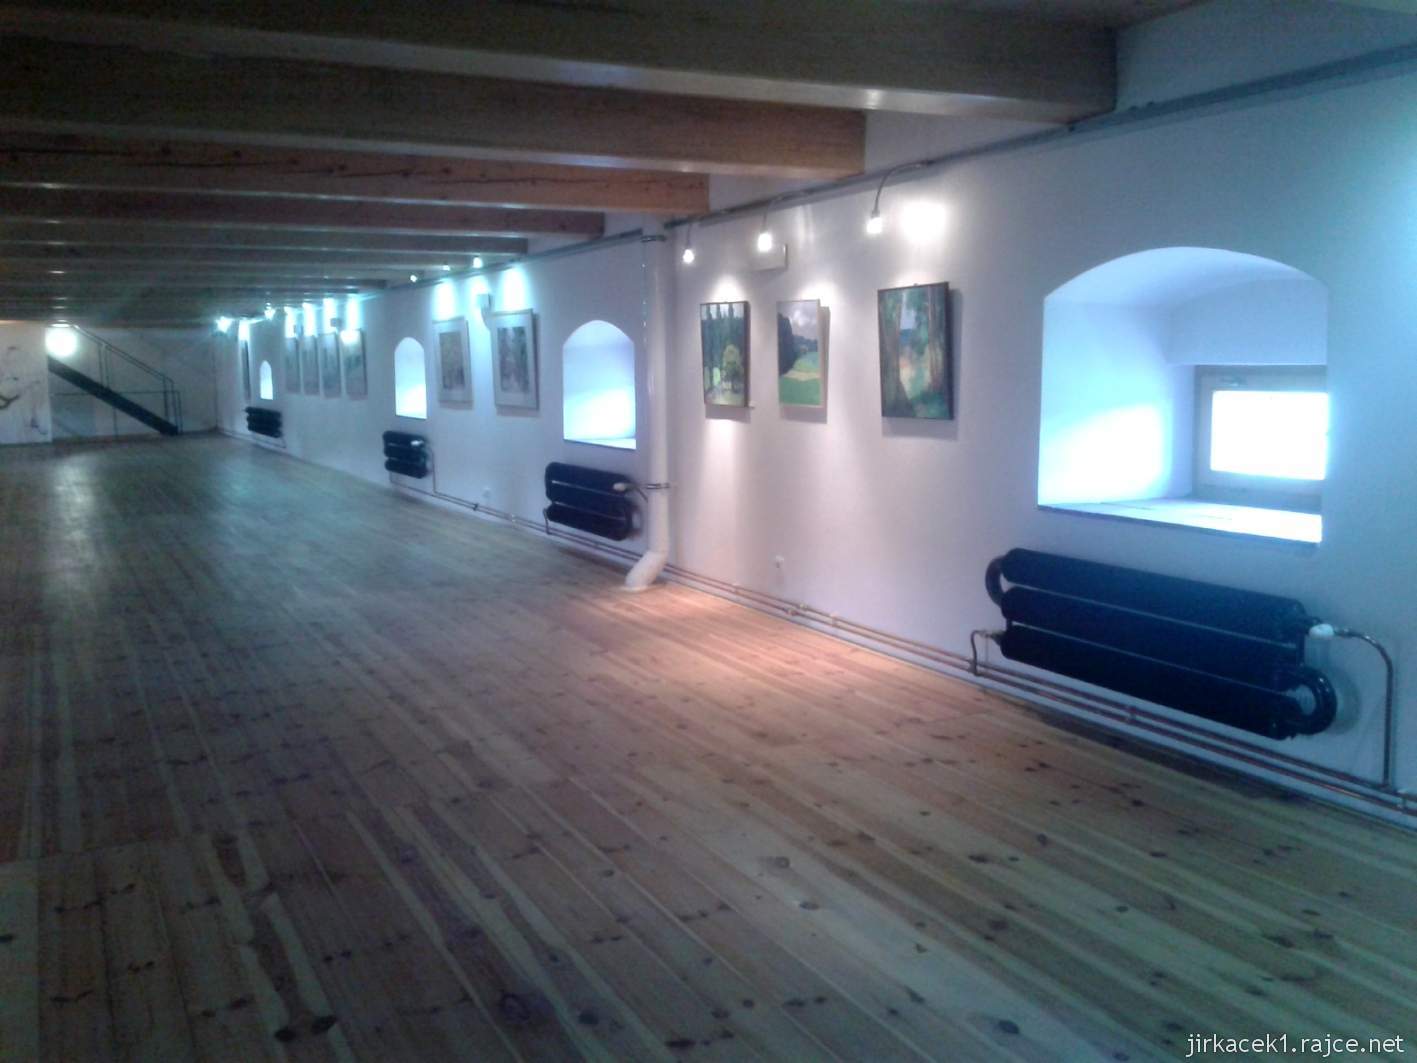 Všeradice - Galerie a muzeum M. D. Rettigové 23 - 2.patro - Expozice umělců z celého světa